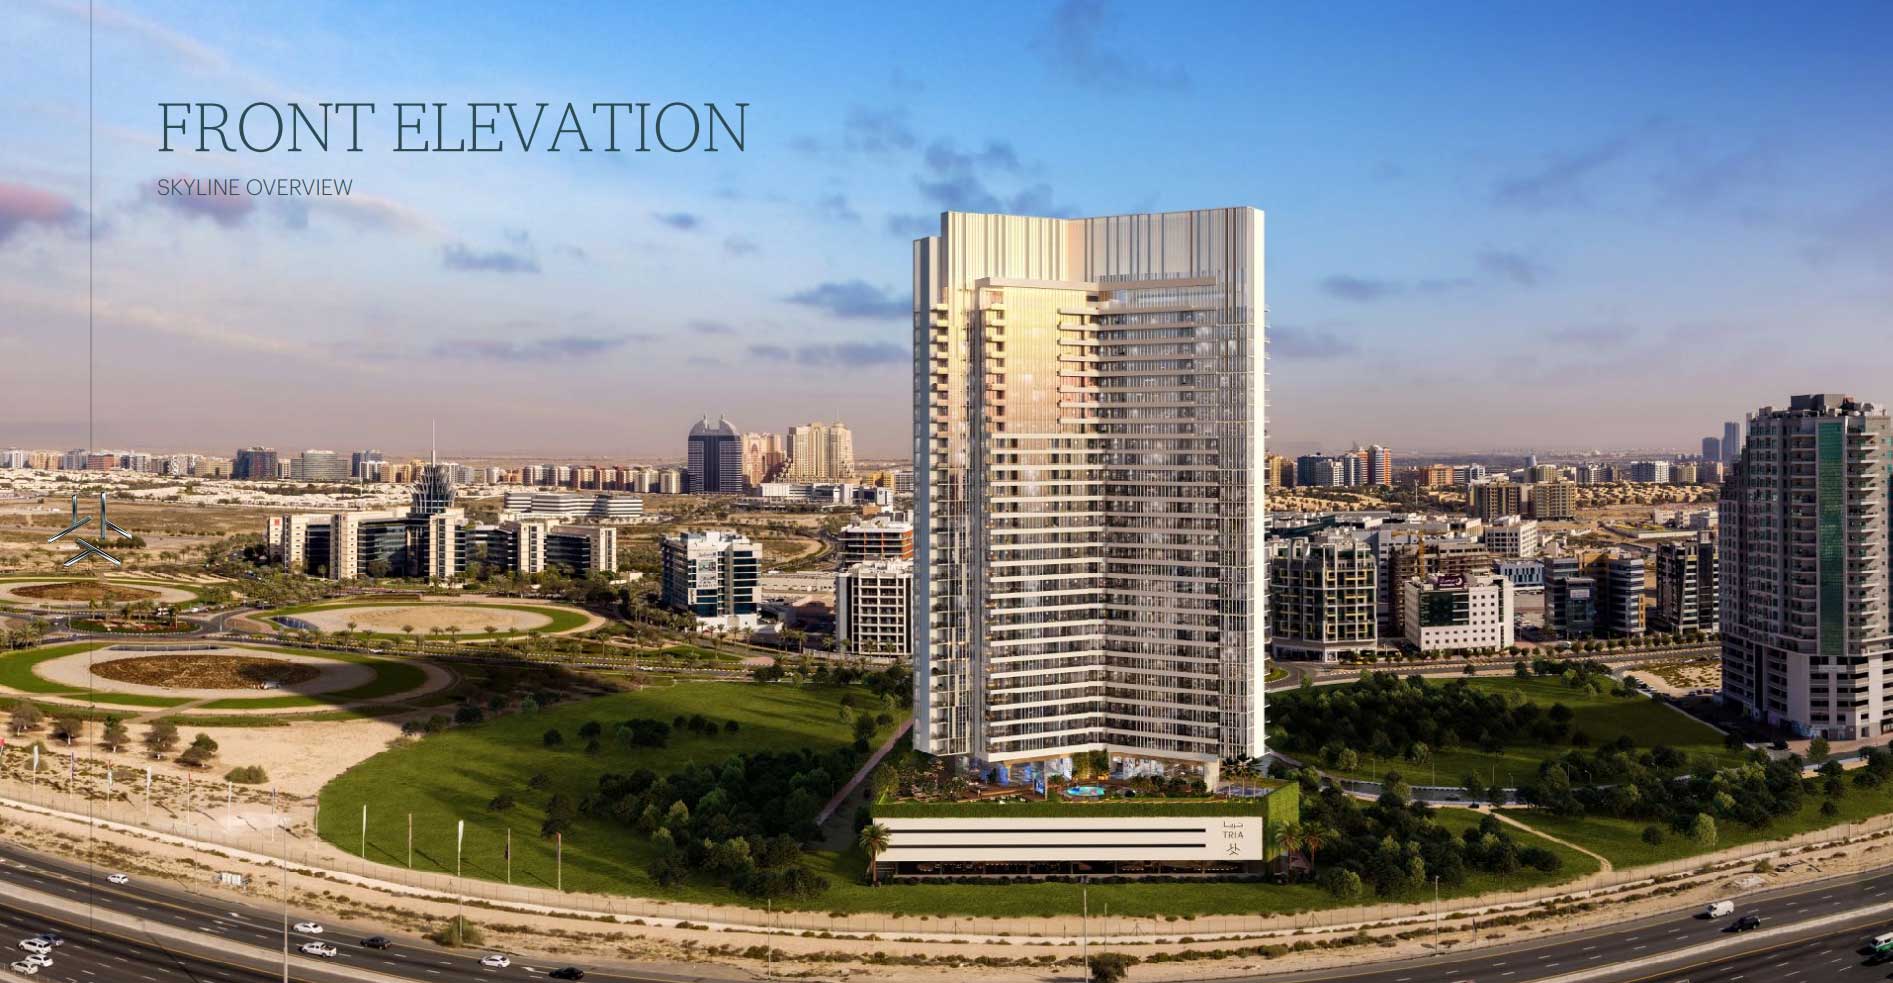 آپارتمان های تریا در دبی سیلیکون اوسیس دبی - سرمایه گذاری و خرید ملک در دبی - املاک یونایتدسون